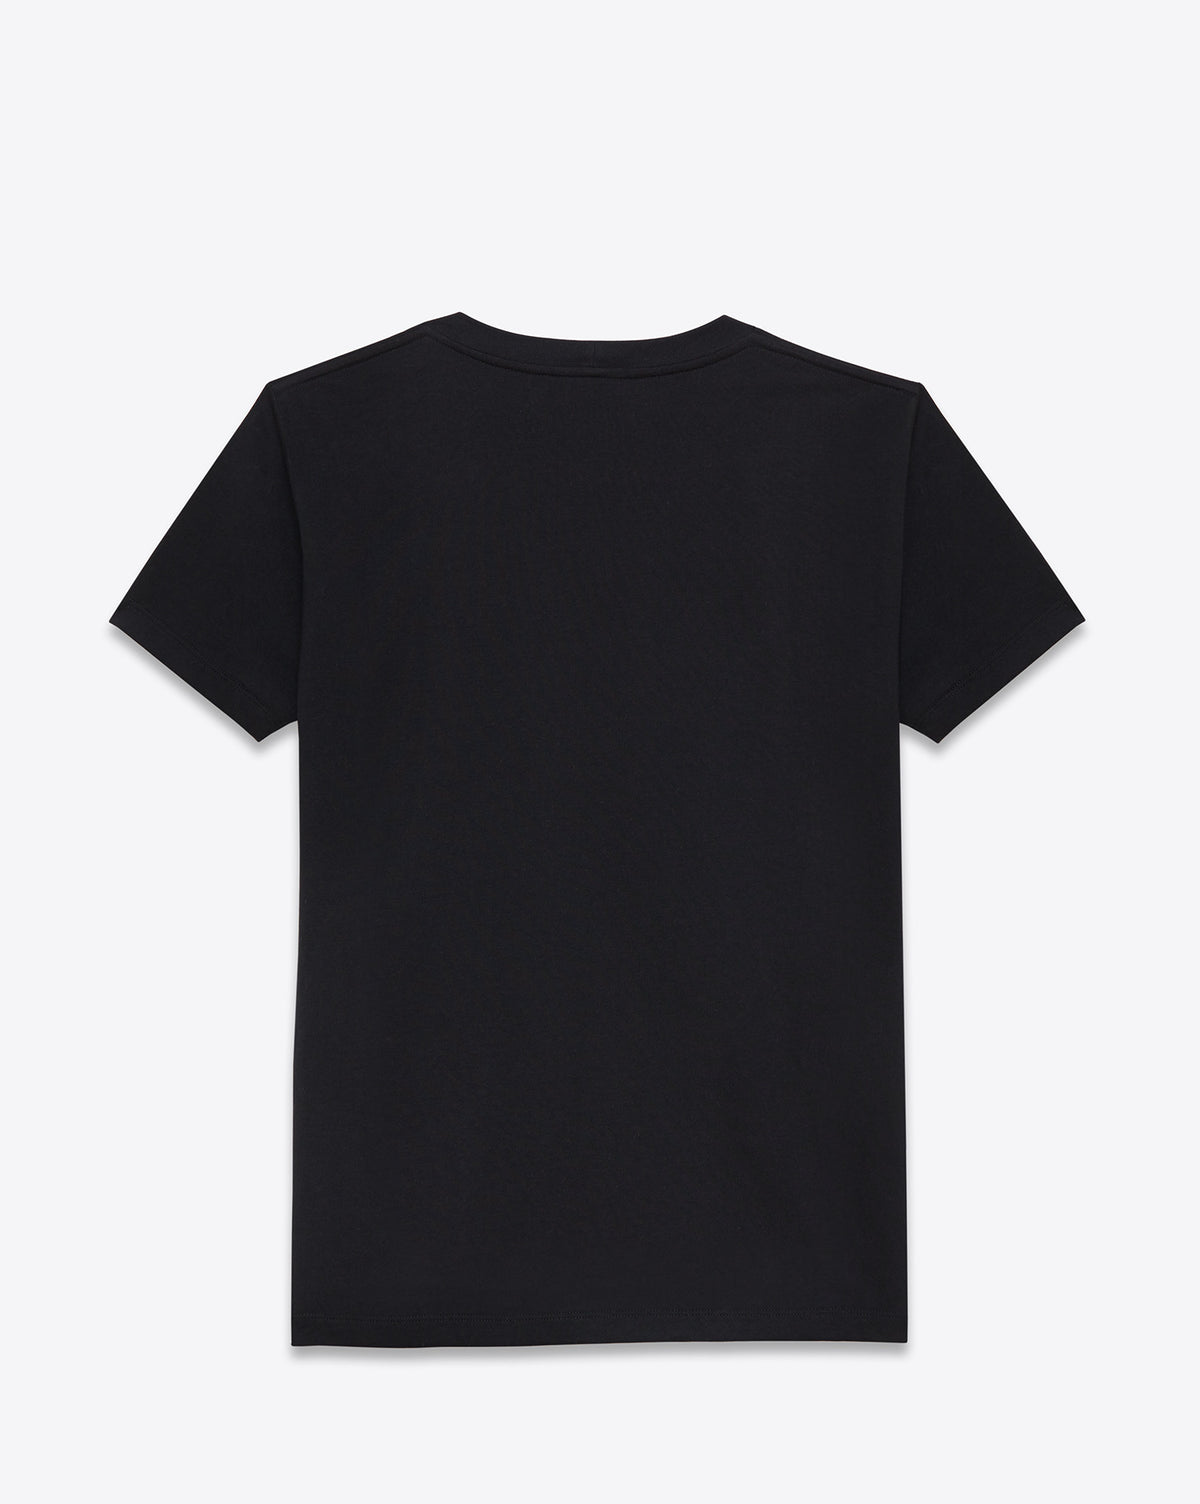 Dinosaur T-Shirt Black - DEMEANOIR - 2